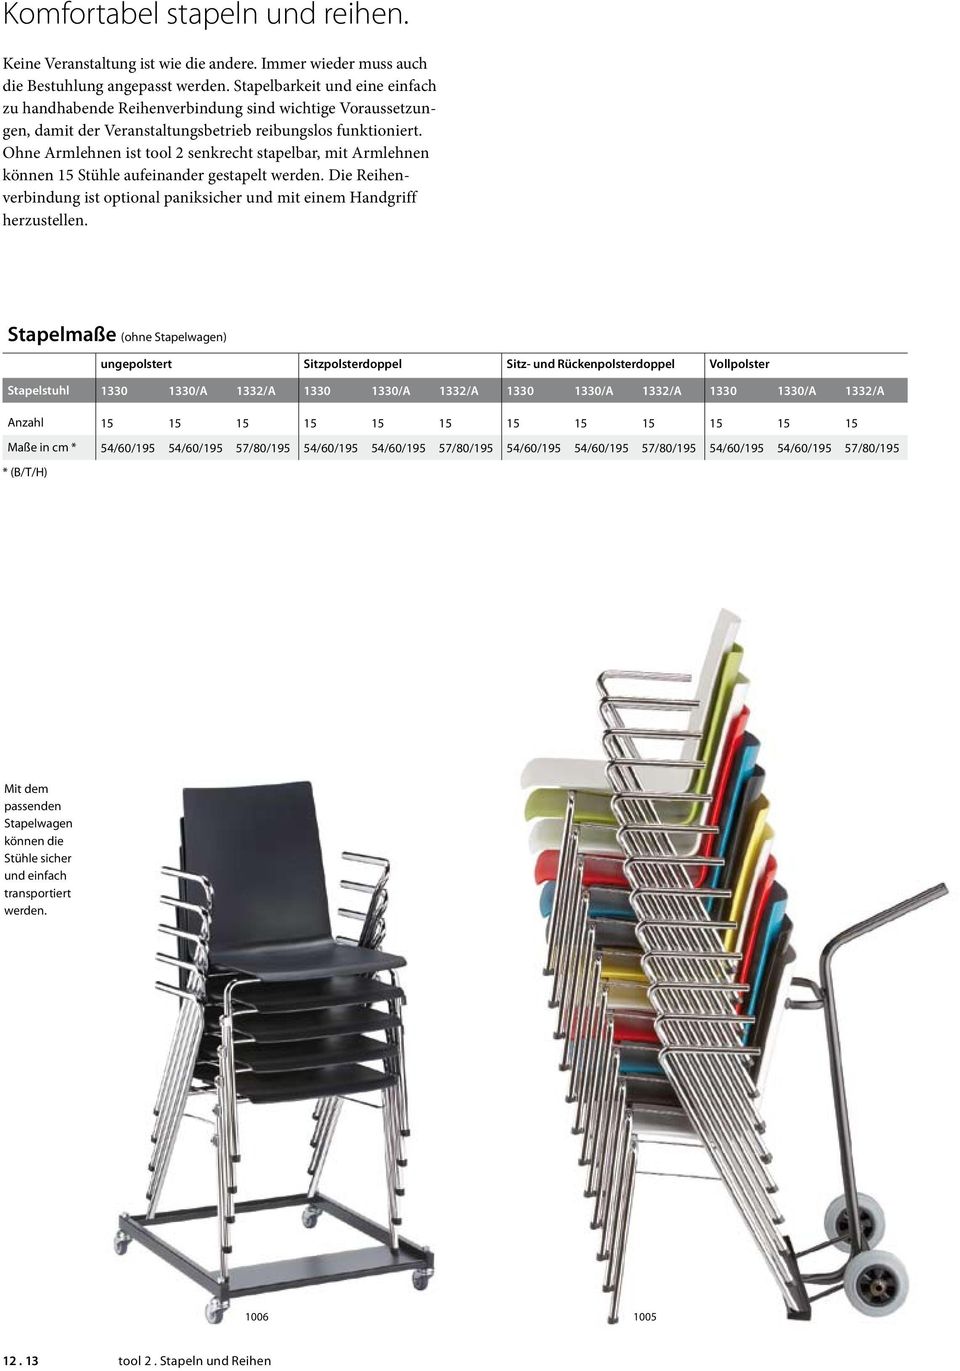 Ohne Armlehnen ist tool 2 senkrecht stapelbar, mit Armlehnen können 15 Stühle aufeinander gestapelt werden. Die Reihenverbindung ist optional paniksicher und mit einem Handgriff herzustellen.